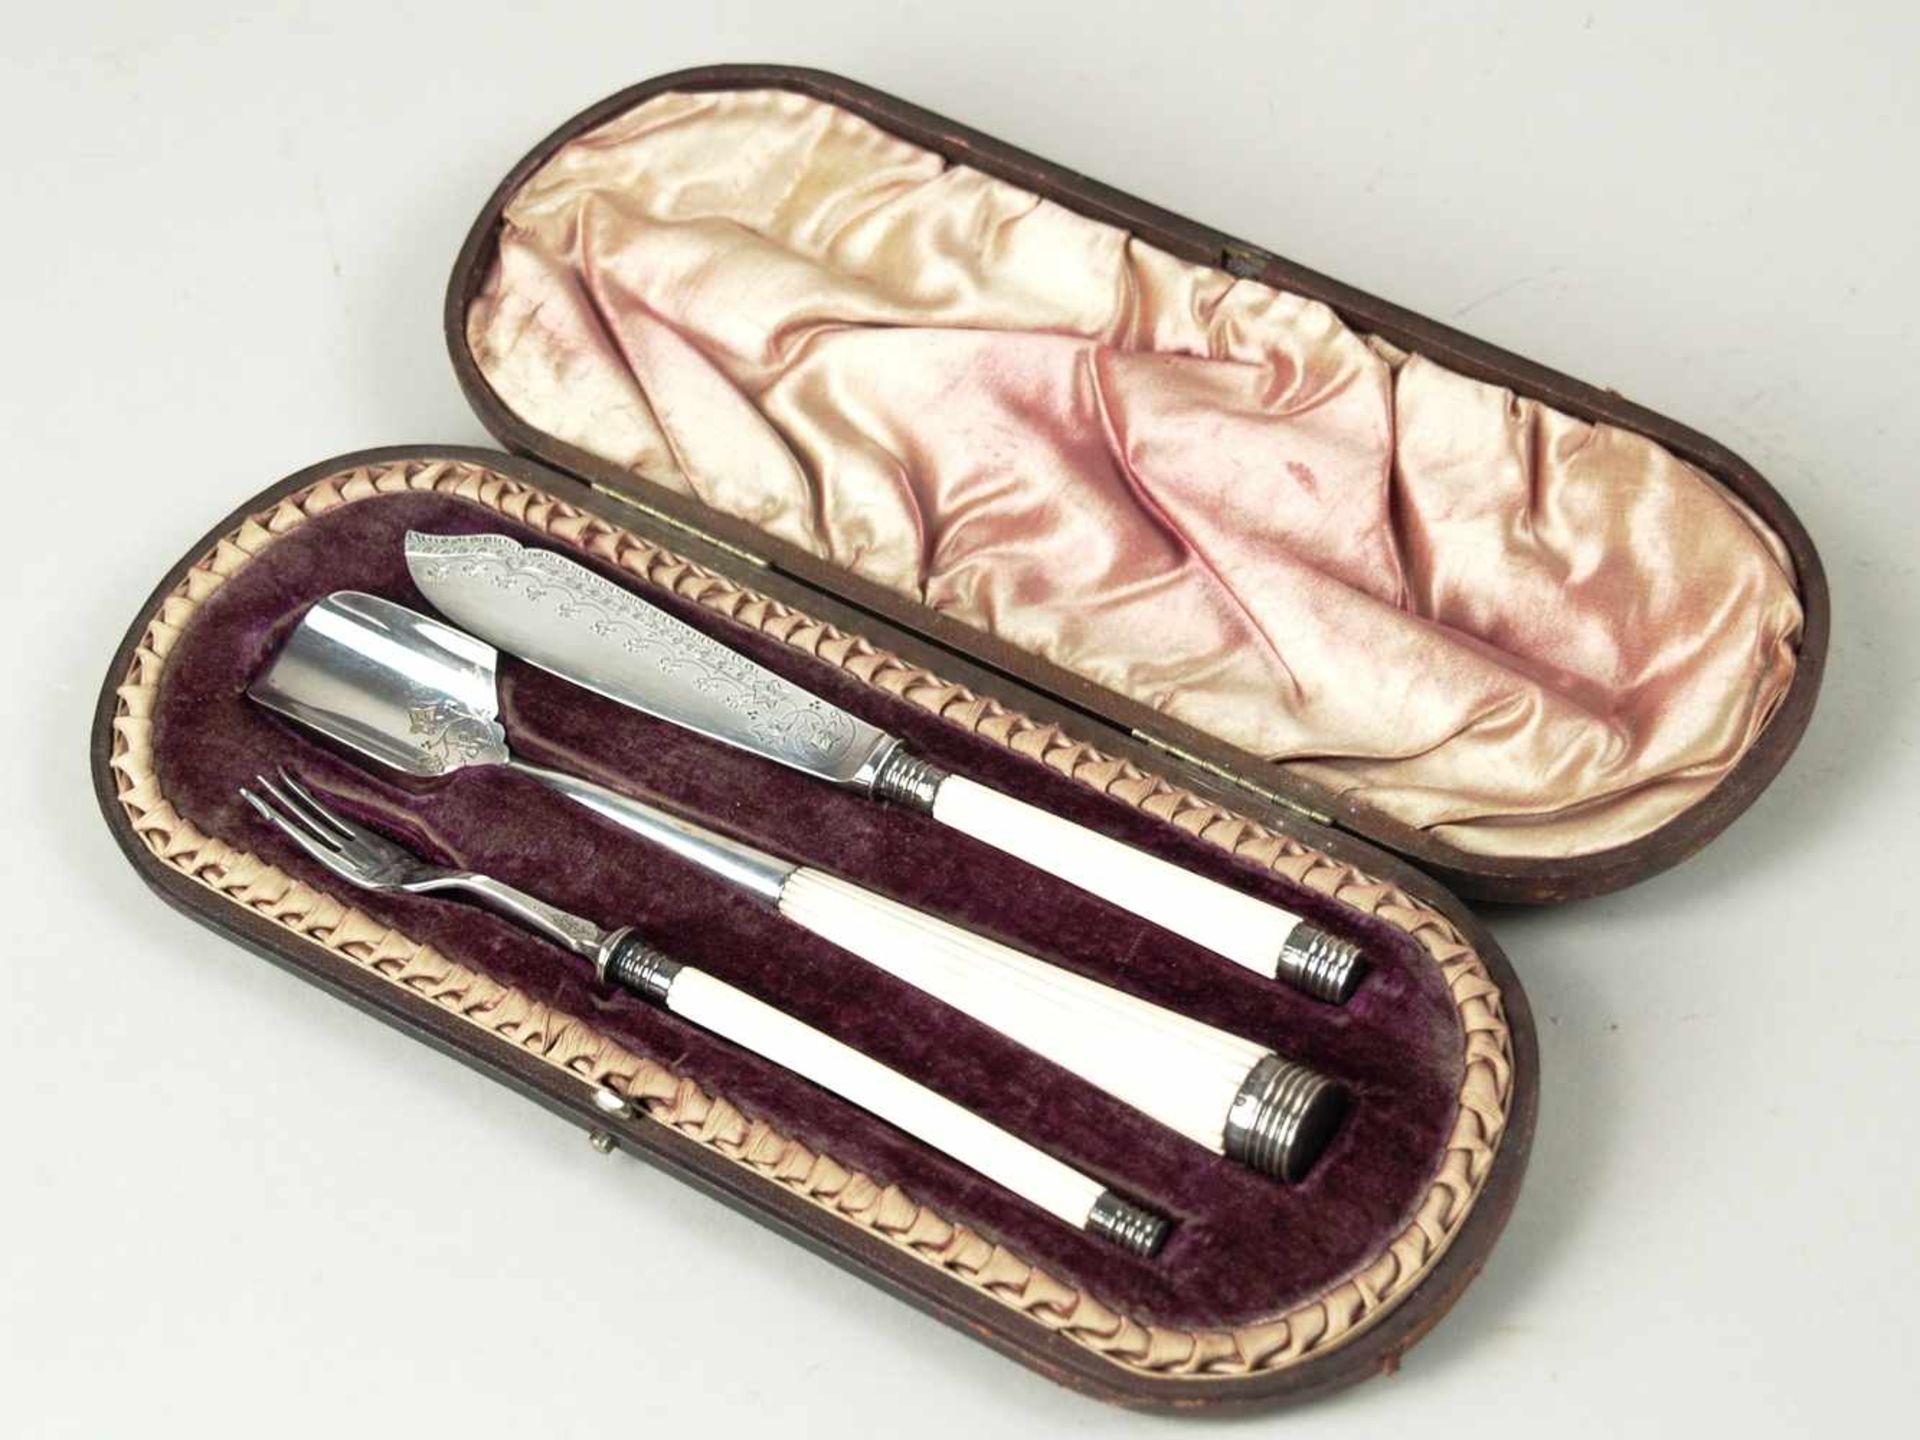 Vorlegebesteck- England, 3-tlg, bestehend aus Vorlegelöffel, Messer und Gabel, weißer Griff aus